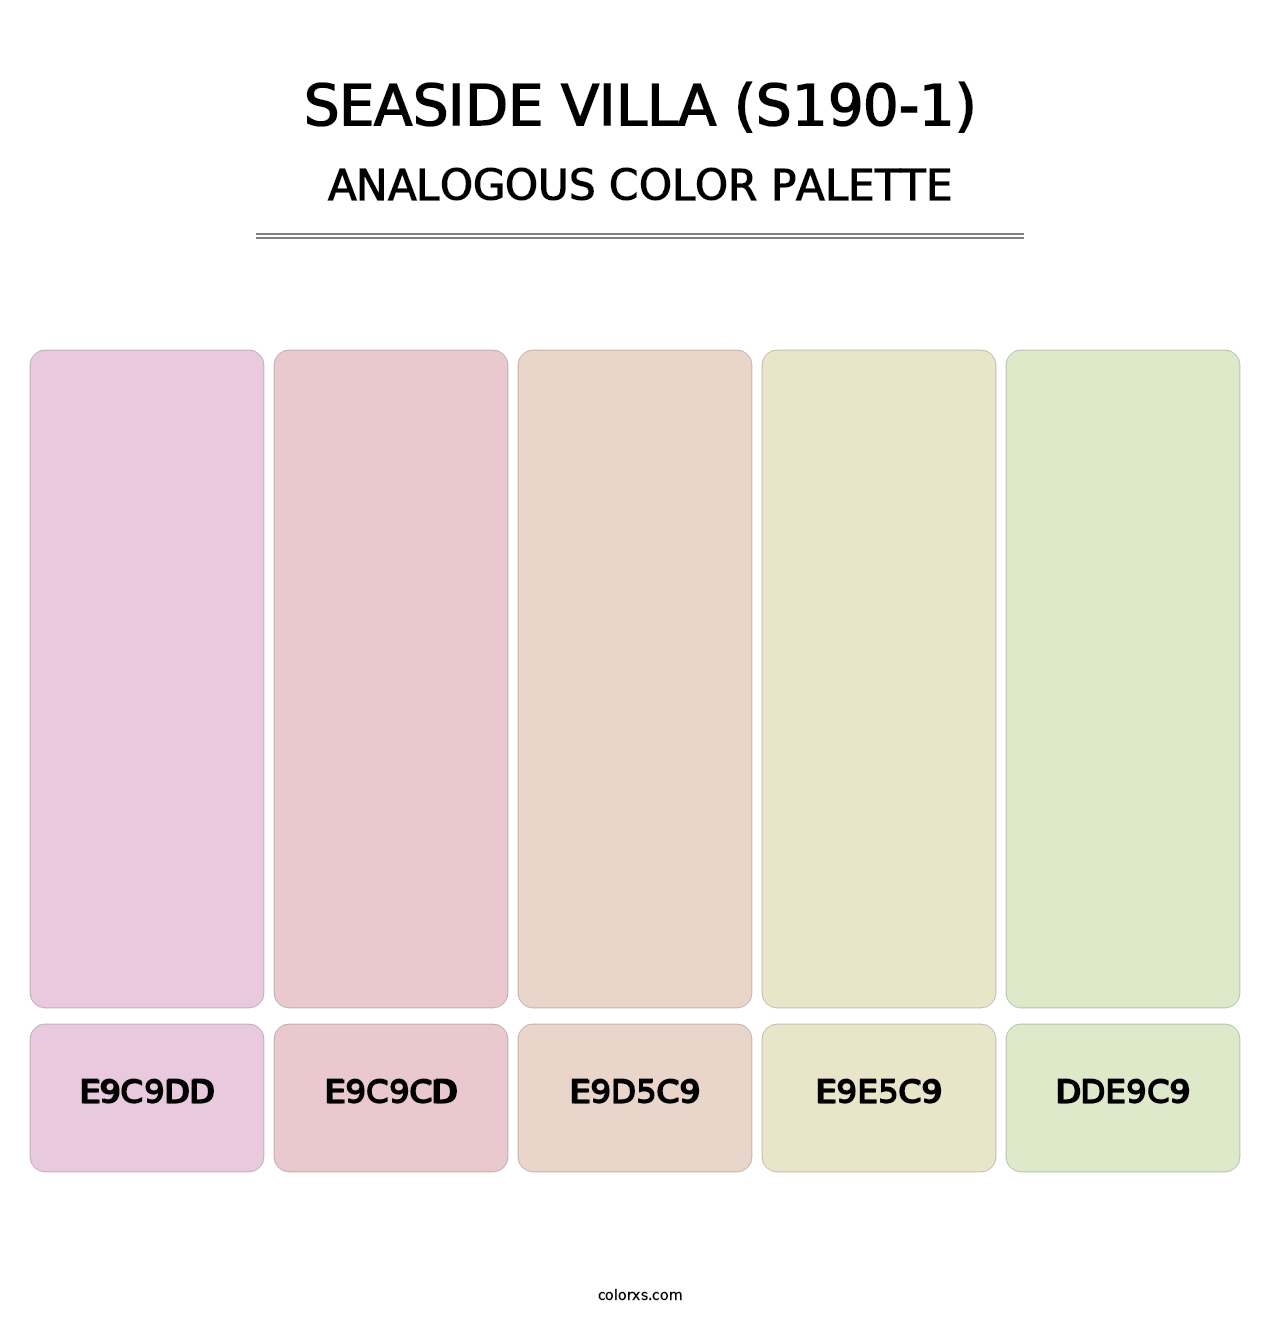 Seaside Villa (S190-1) - Analogous Color Palette